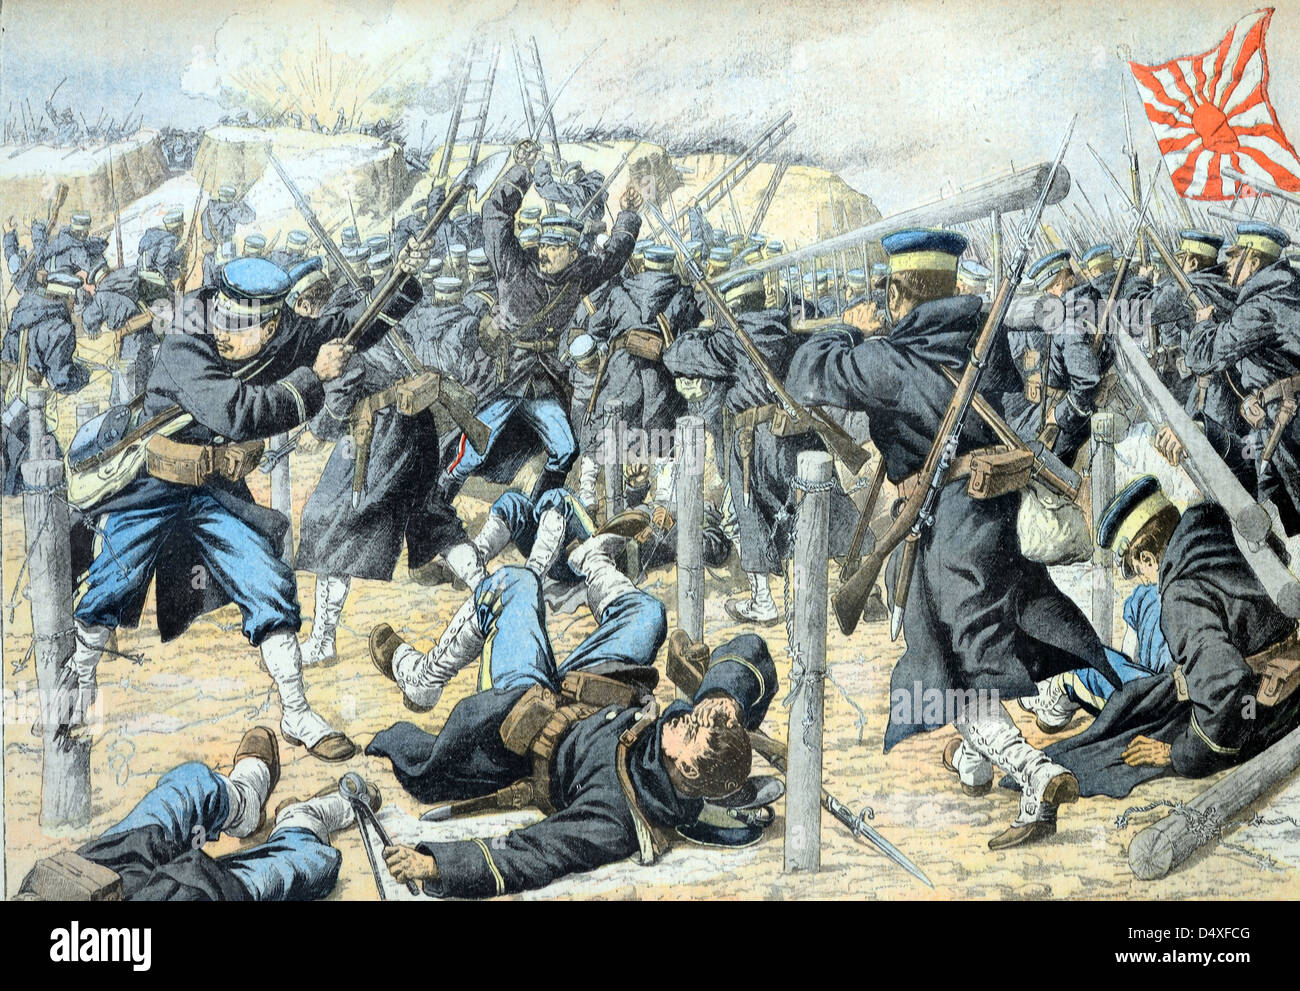 Alte oder alte Darstellung des japanischen Angriffs auf russische Schützengräben in der Mandschurei während des Russisch-Japanischen Krieges (Juni 1904/05) Stockfoto